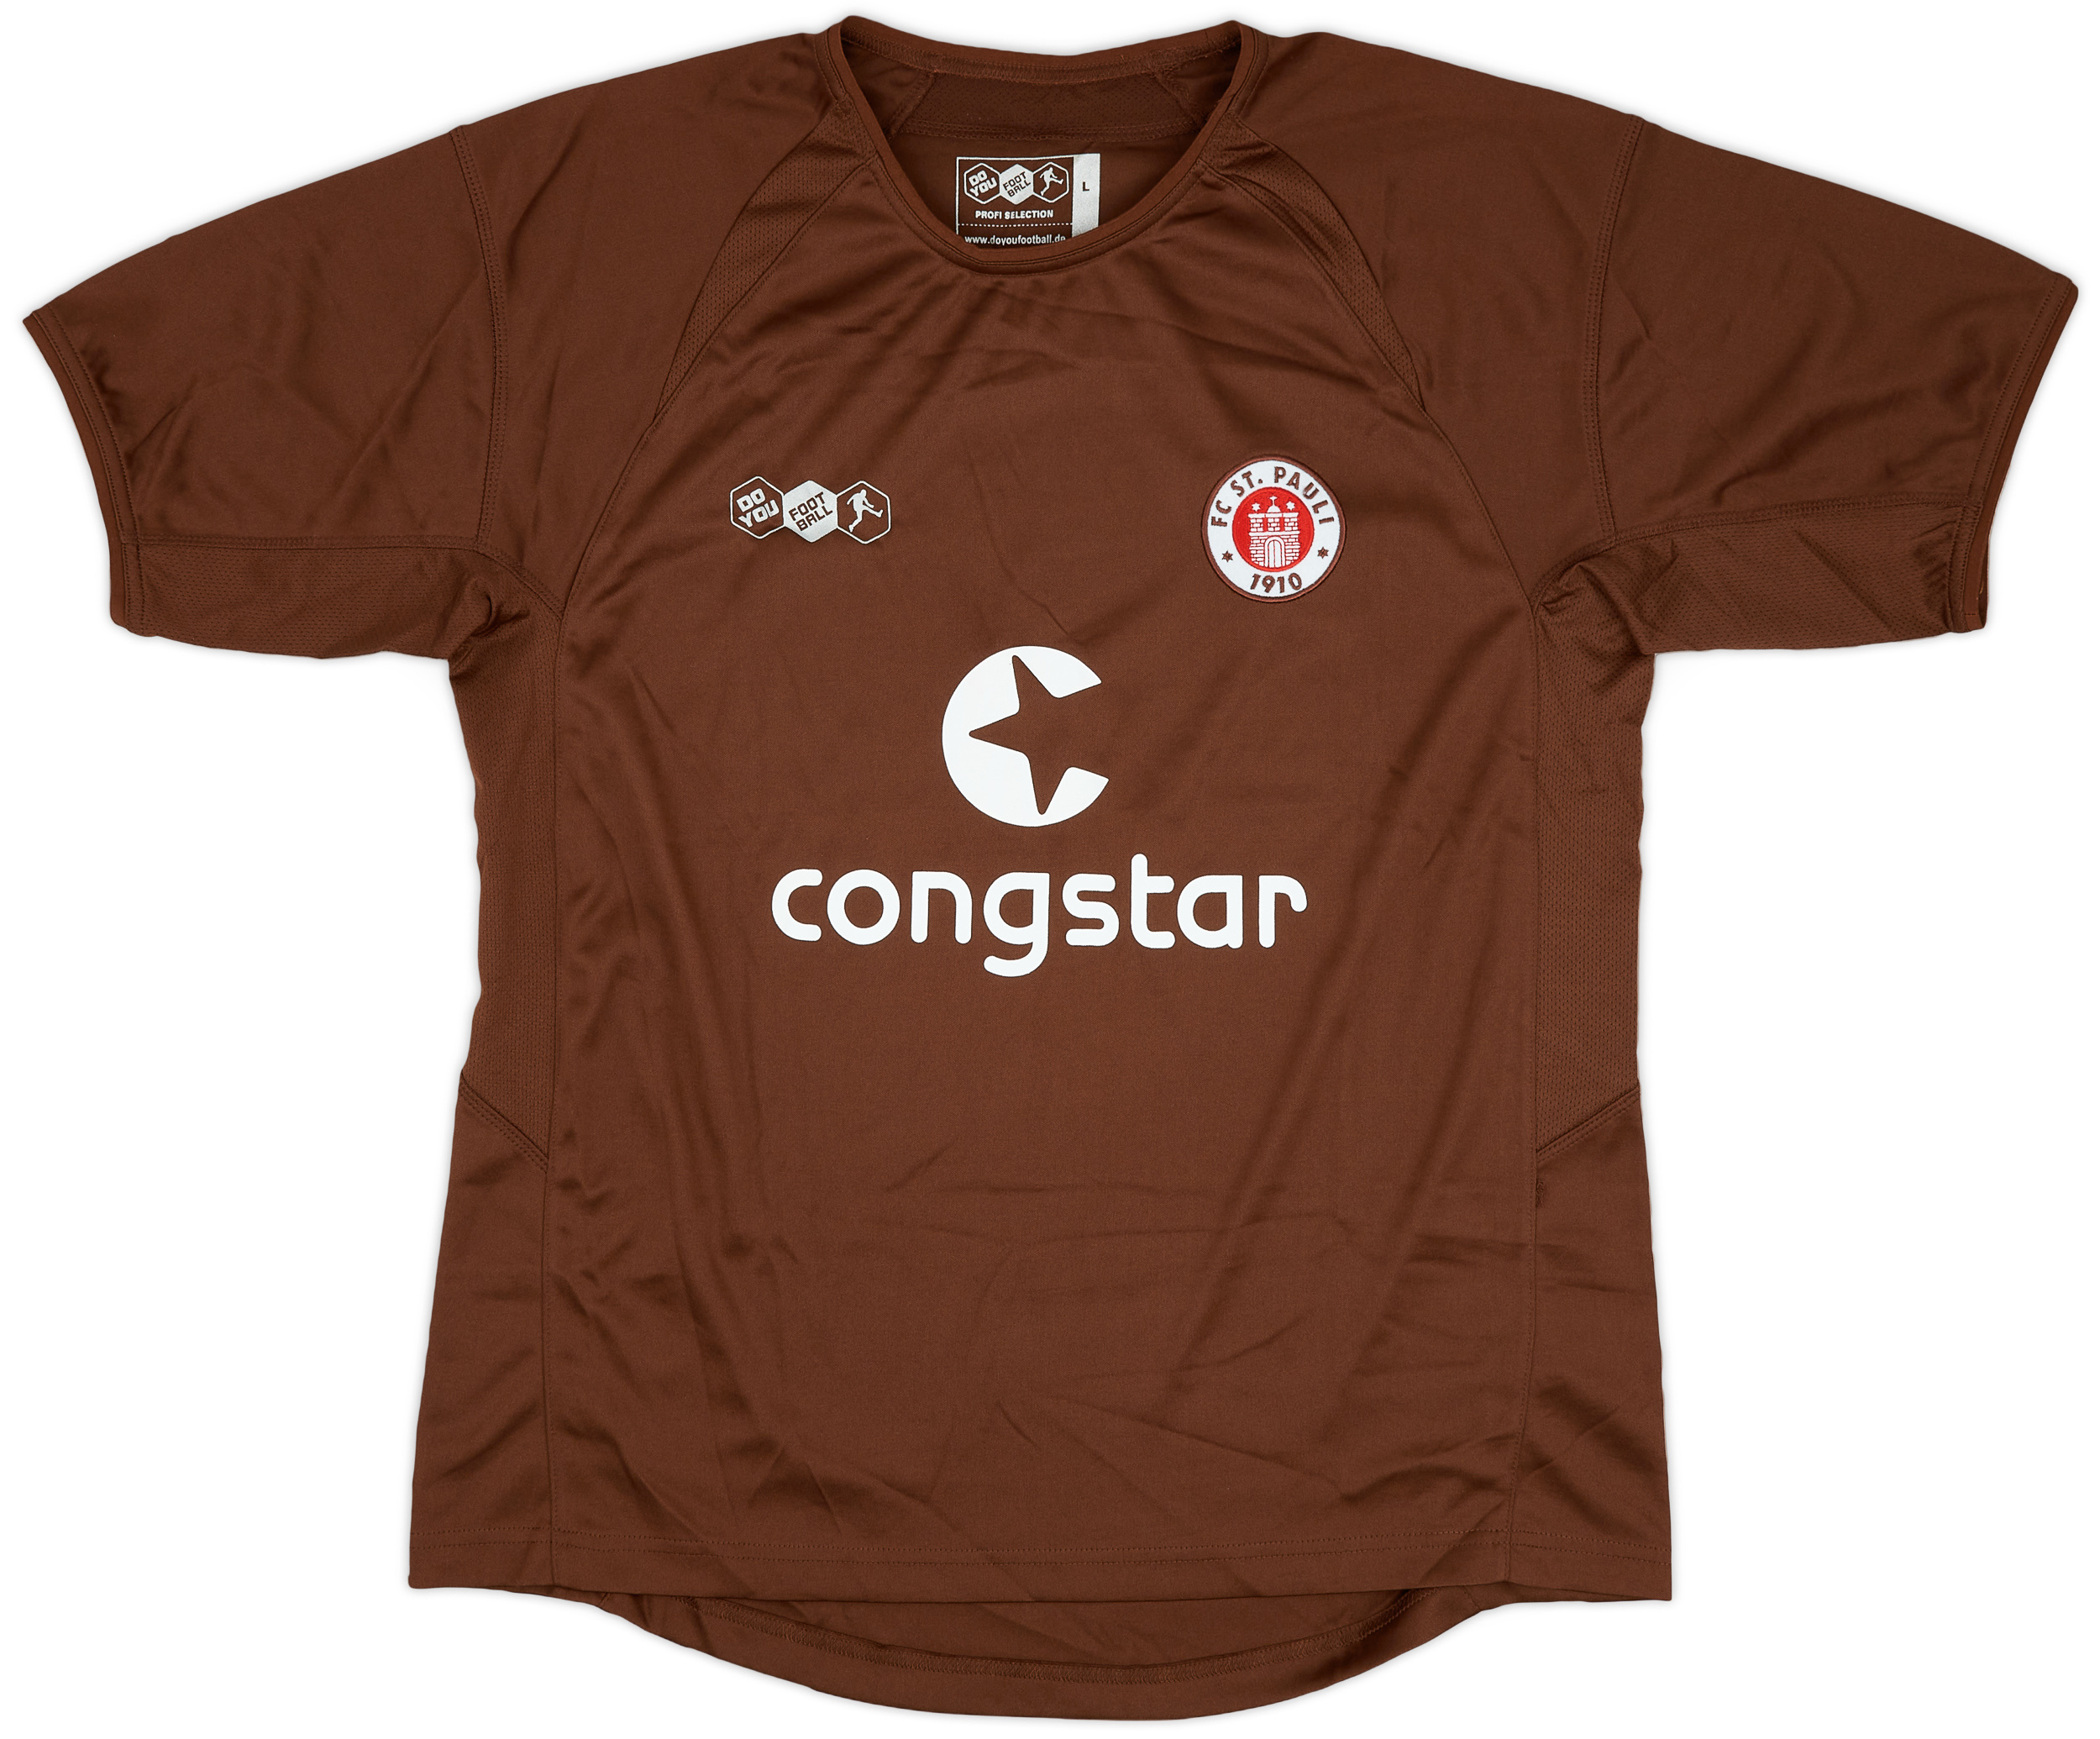 St Pauli  home Camiseta (Original)